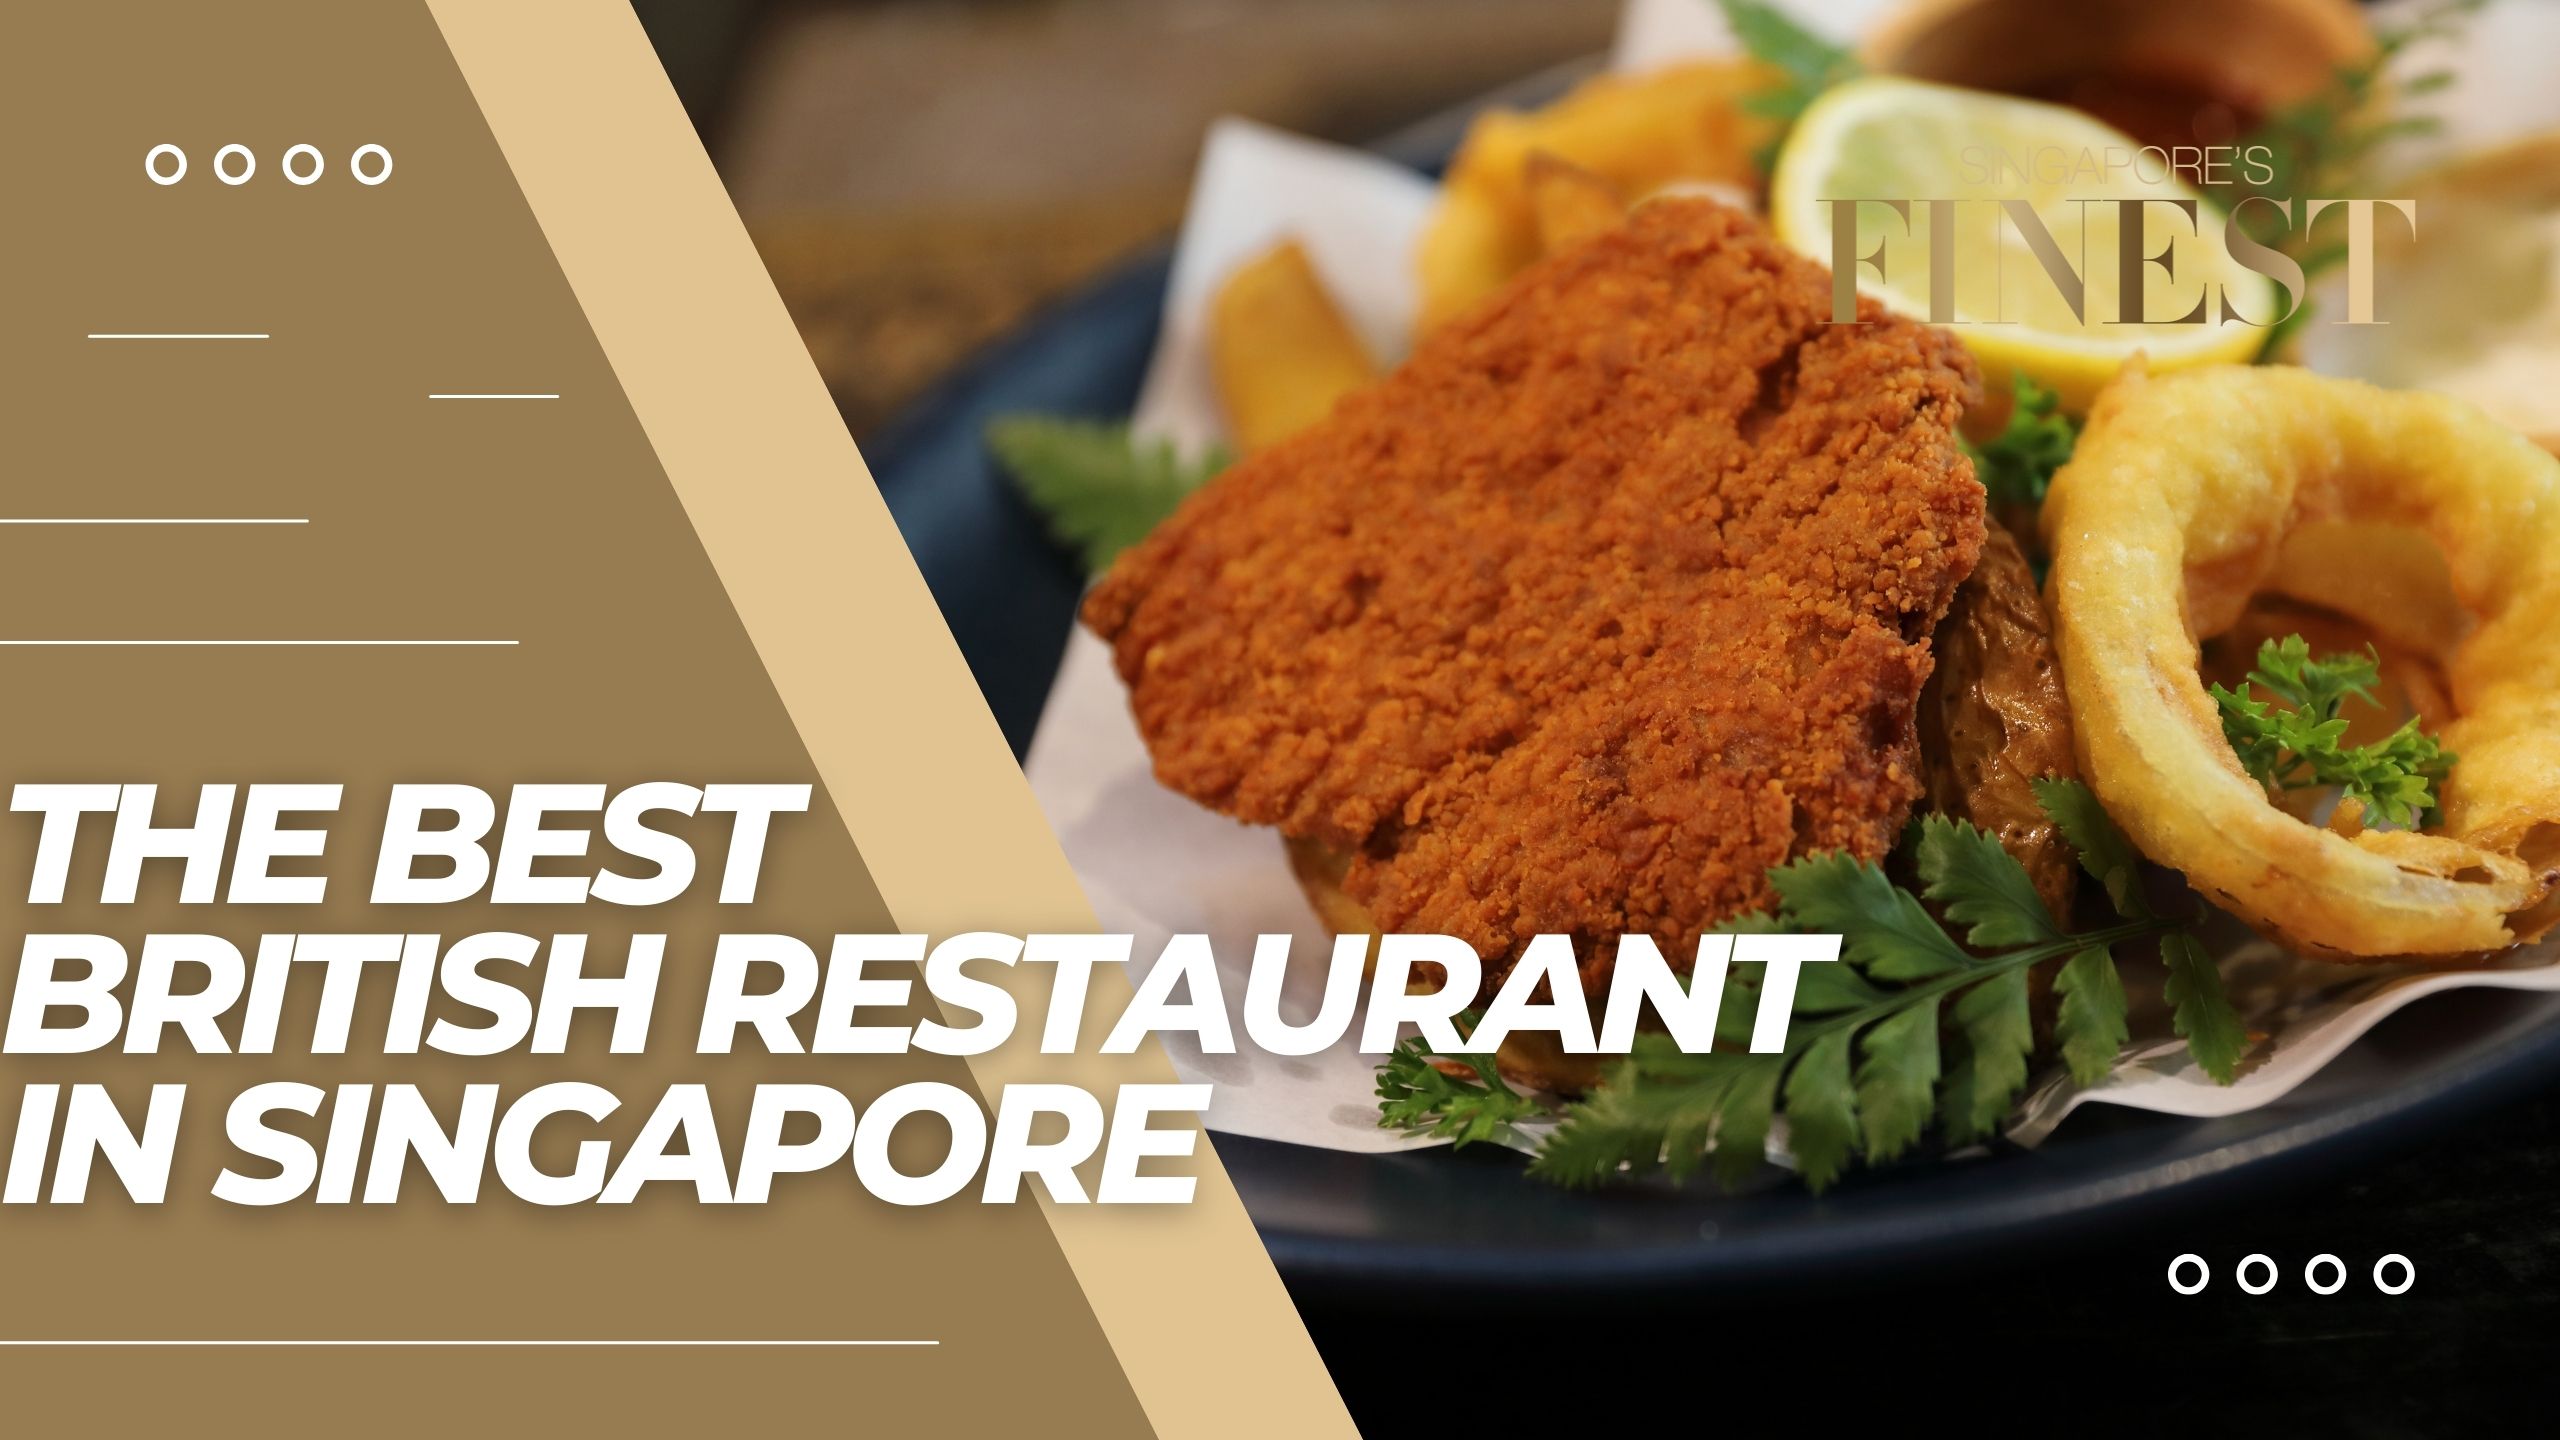 The Finest British Restaurants in Singapore